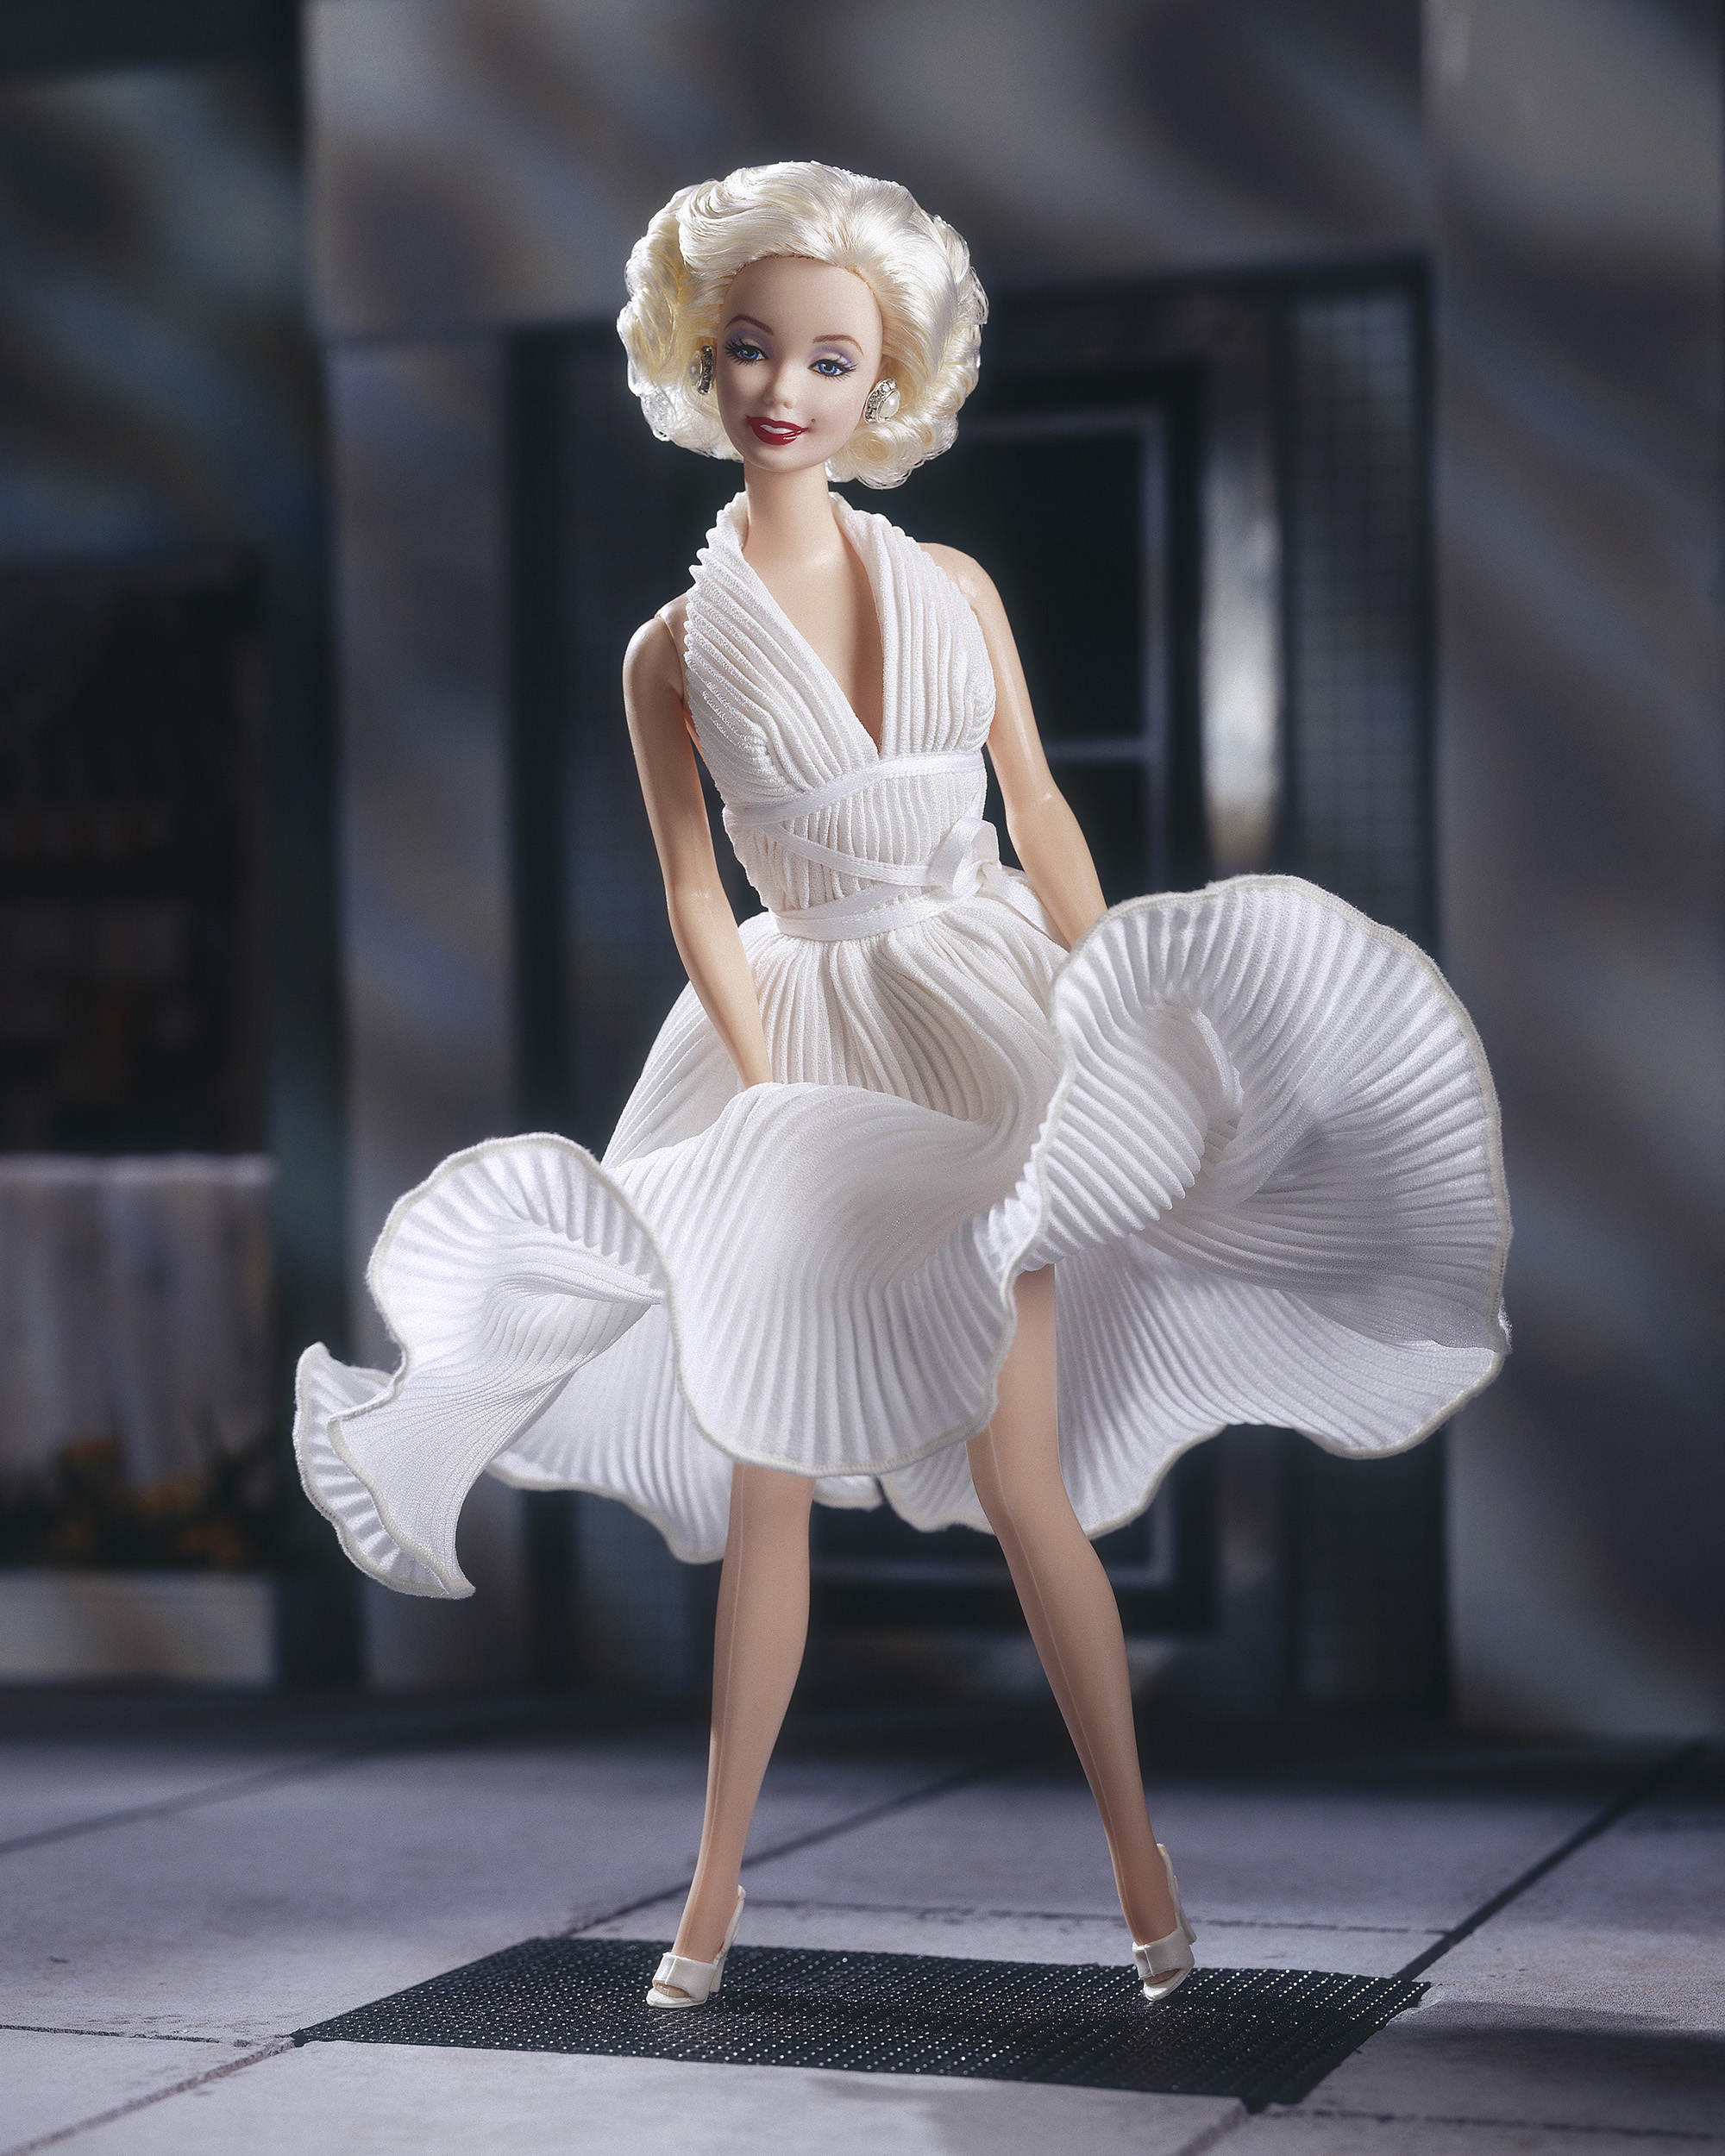 The Marilyn Monroe Barbie, released in 1997.